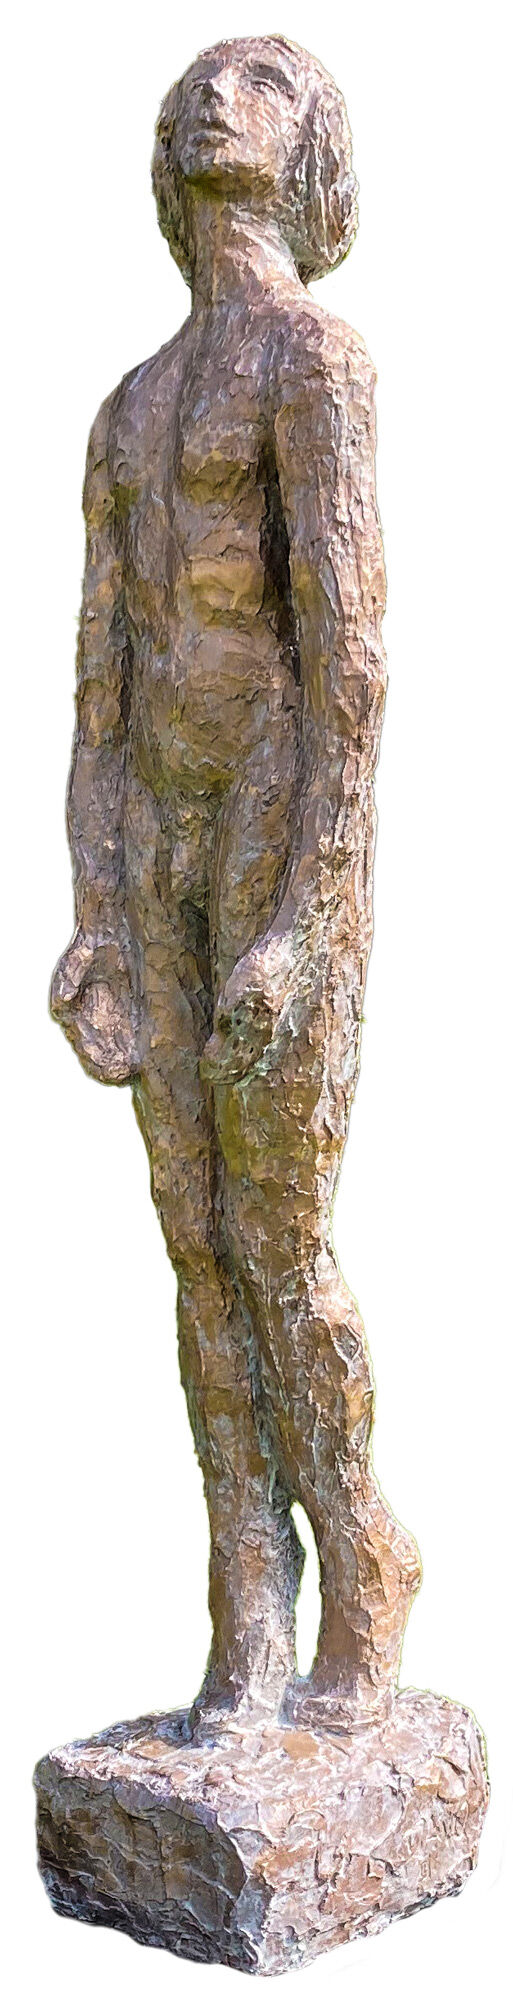 Sculptuur "Pina - Volle maan" (2019), brons von Dagmar Vogt